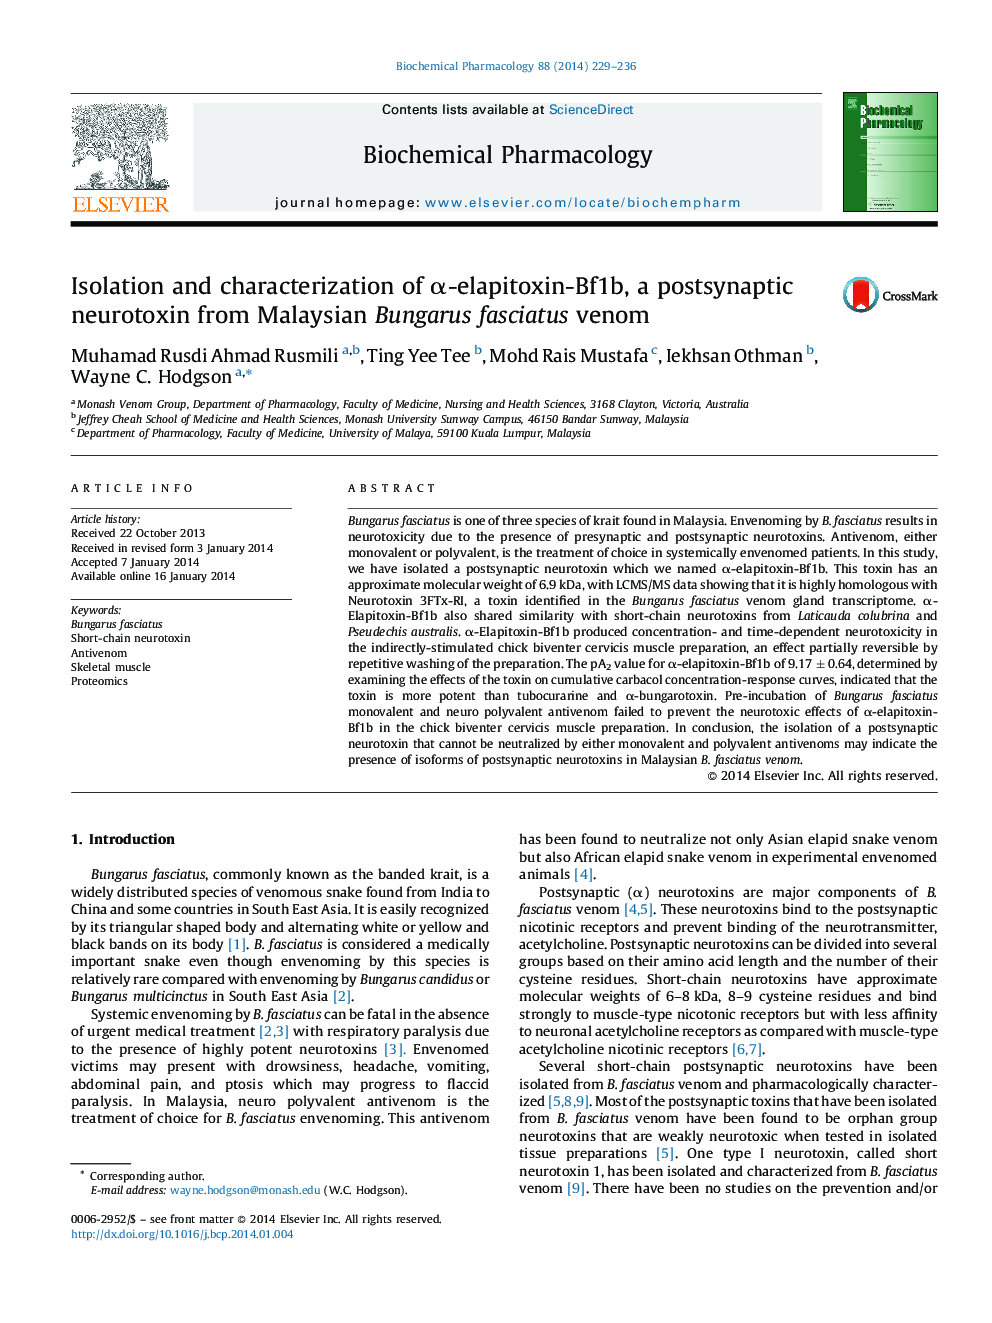 Isolation and characterization of Î±-elapitoxin-Bf1b, a postsynaptic neurotoxin from Malaysian Bungarus fasciatus venom